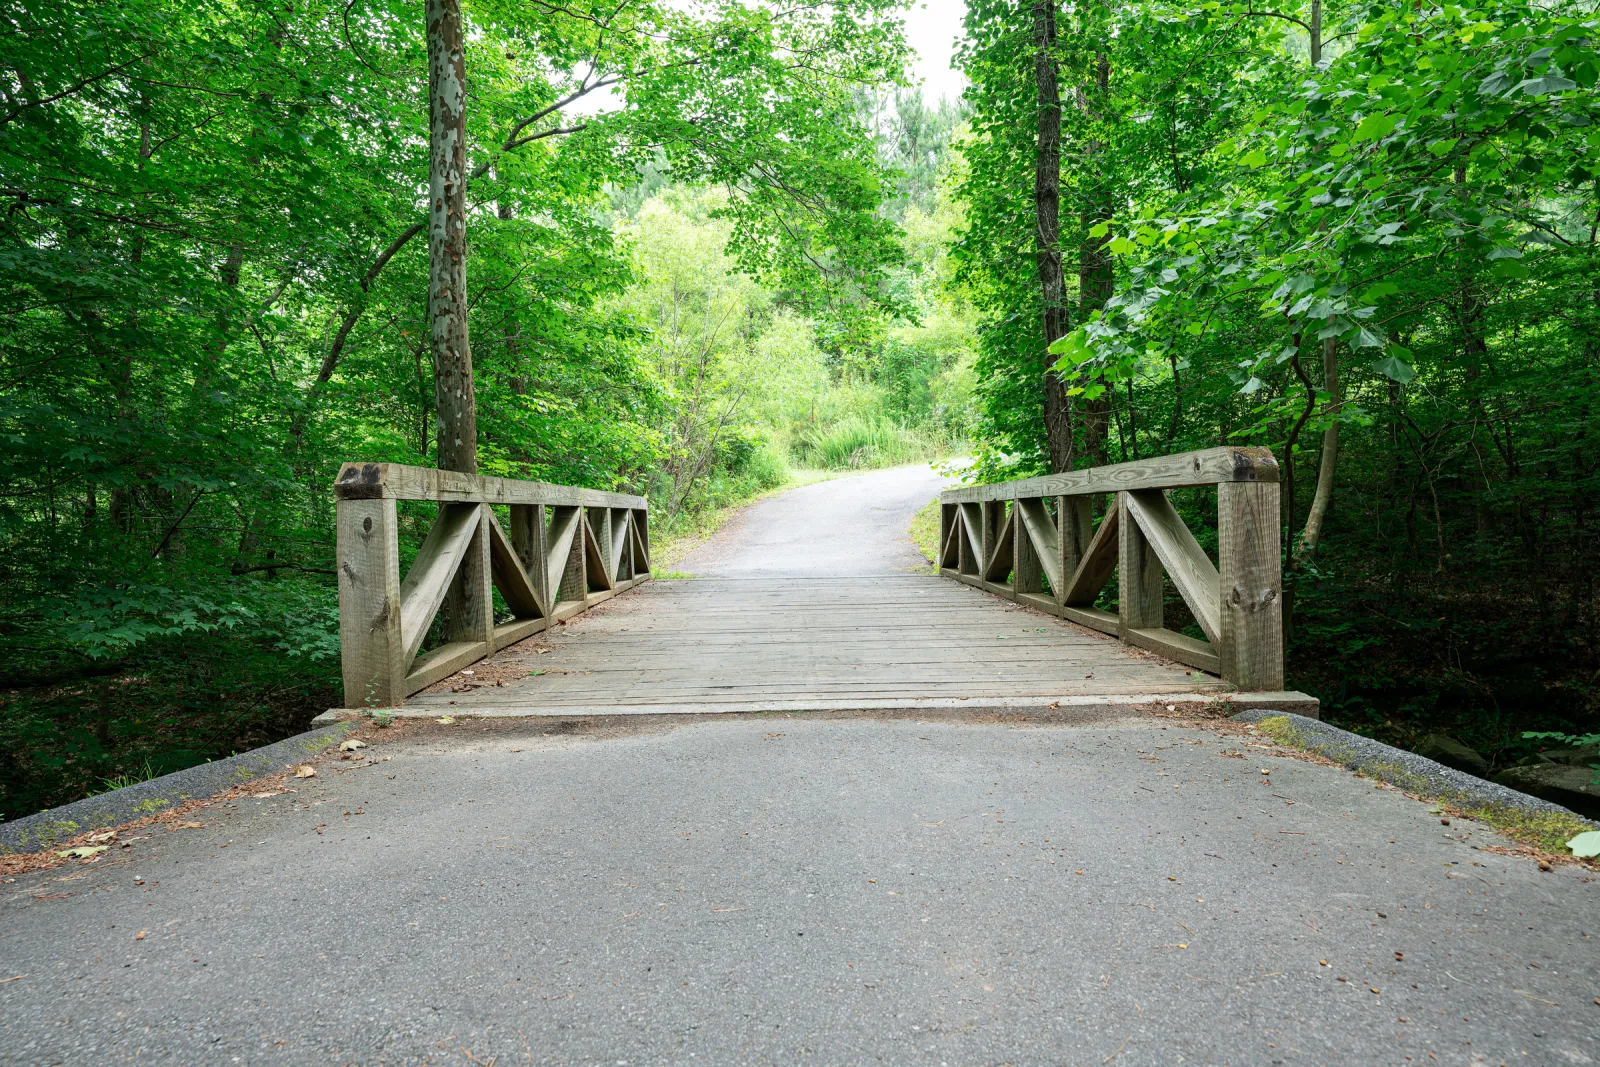 a wooden bridge over a road